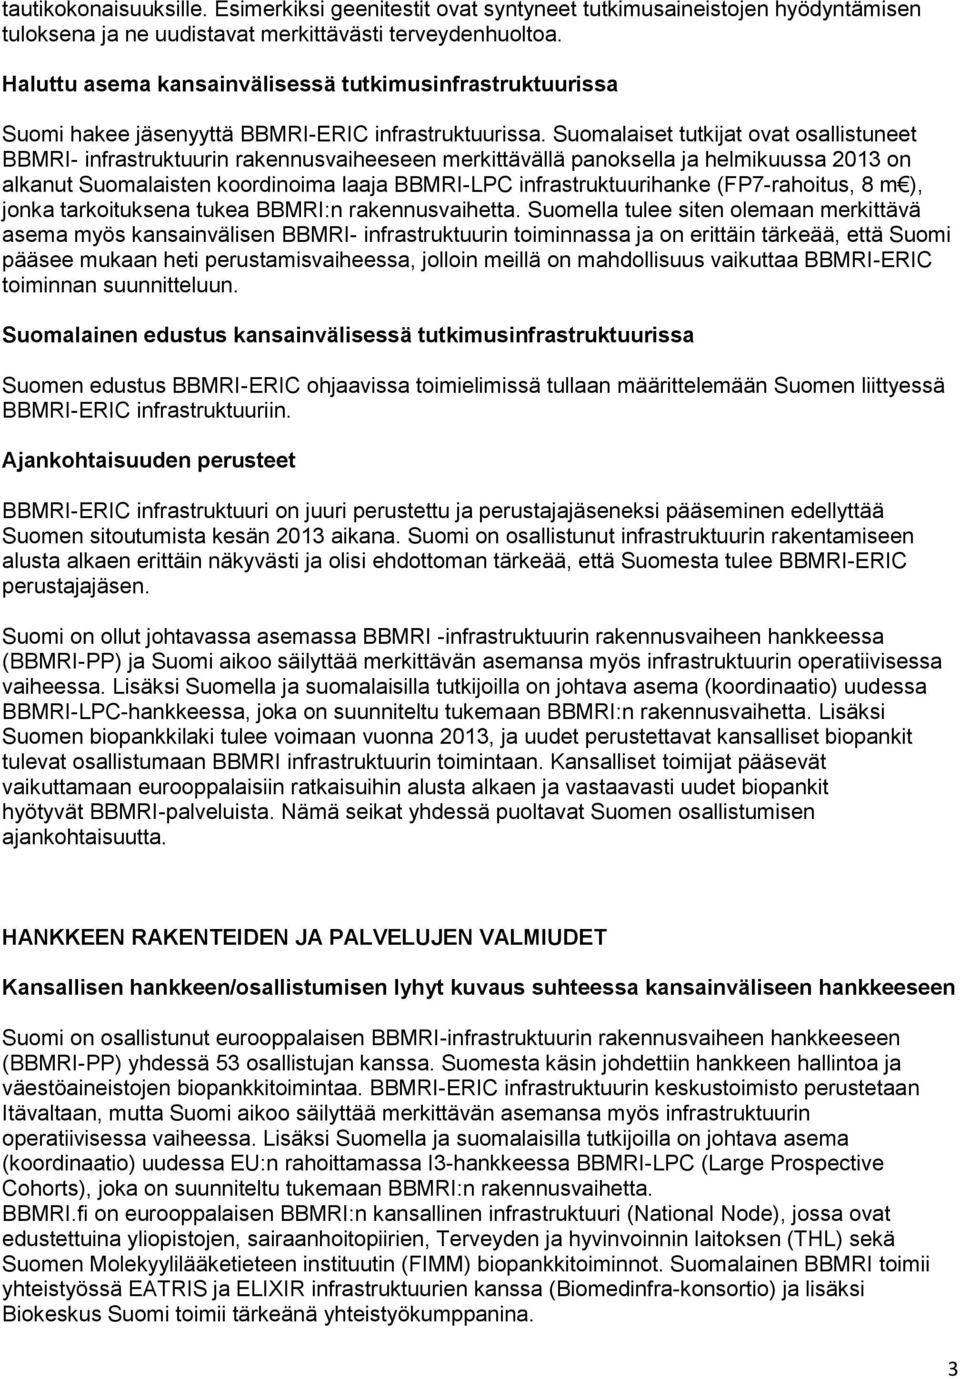 Suomalaiset tutkijat ovat osallistuneet BBMRI- infrastruktuurin rakennusvaiheeseen merkittävällä panoksella ja helmikuussa 2013 on alkanut Suomalaisten koordinoima laaja BBMRI-LPC